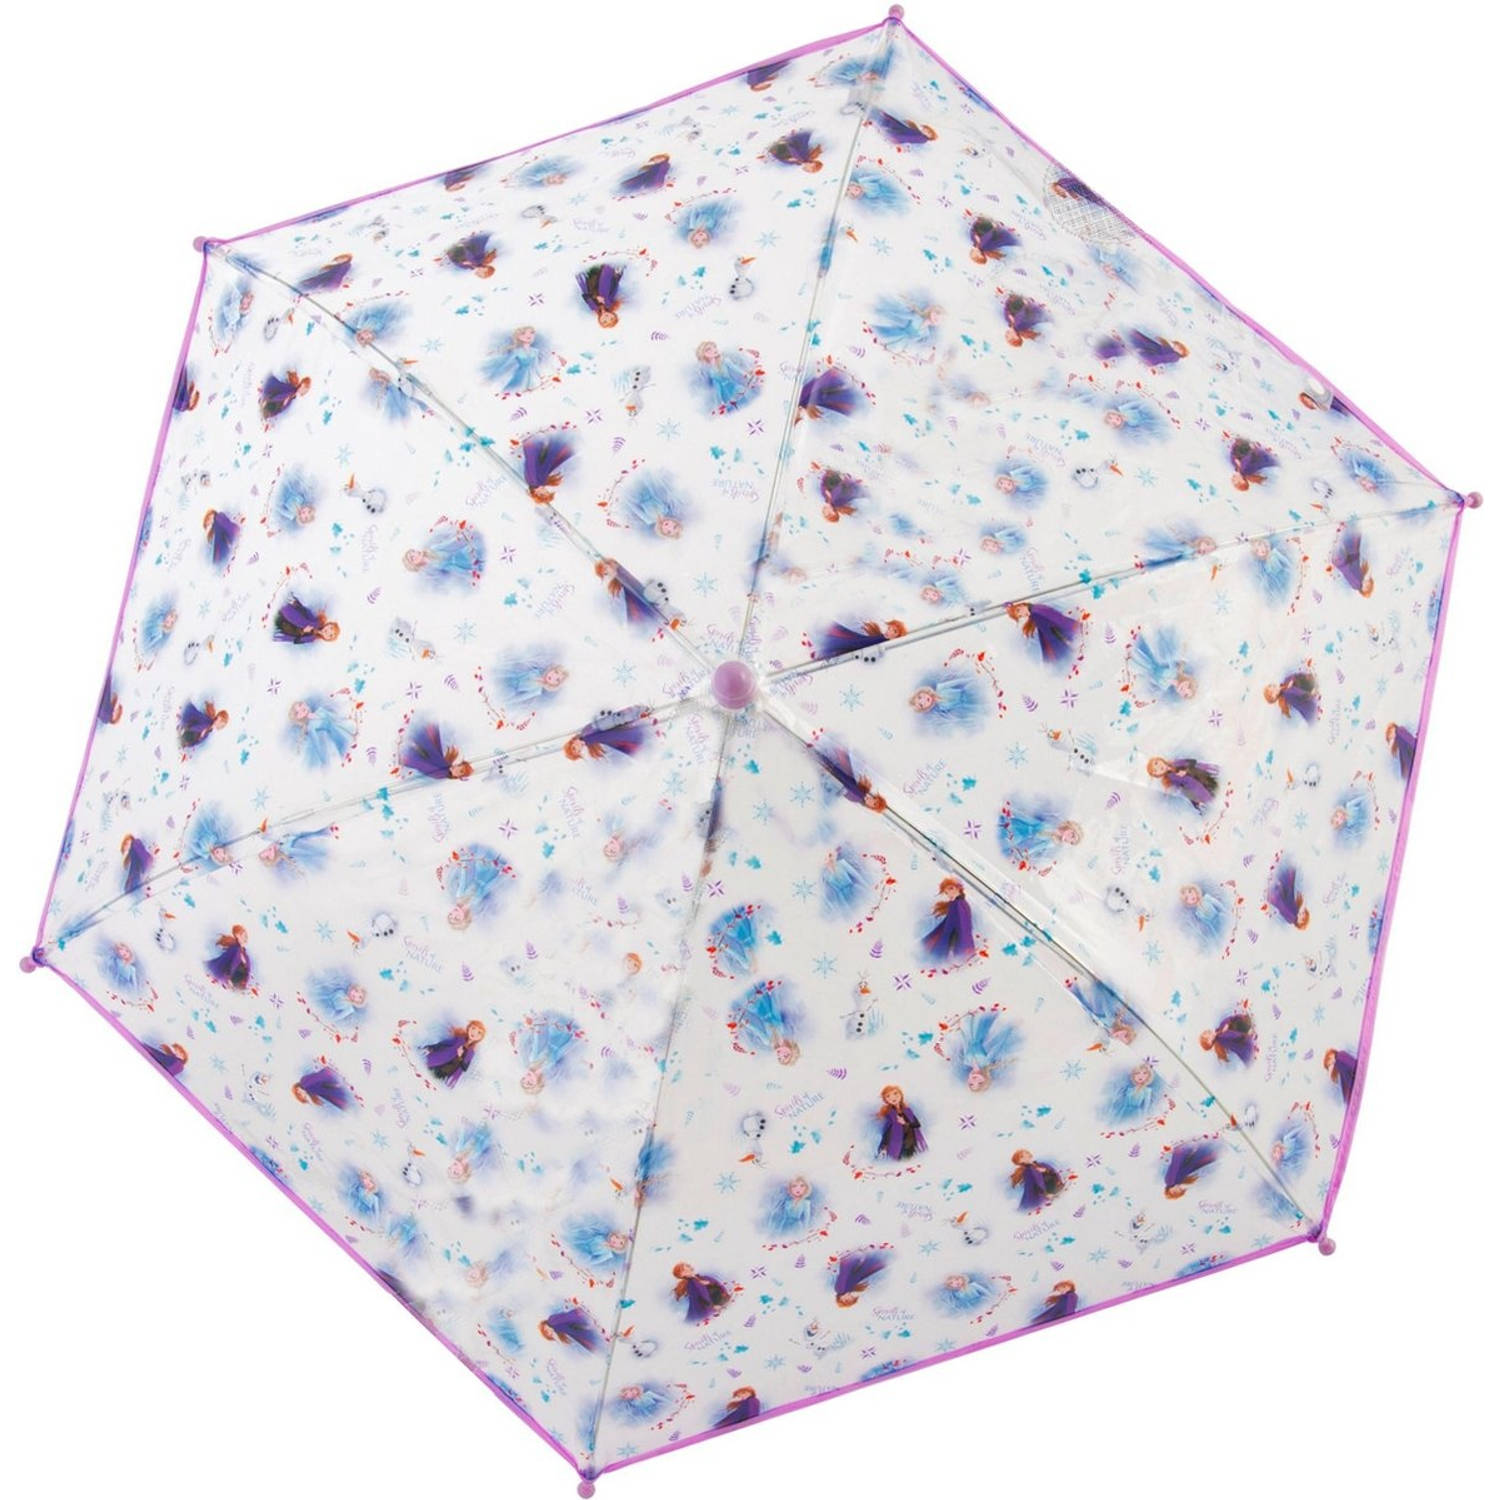 in stand houden Eerste waarom niet Kinderparaplu - Frozen Kinderparaplu's - Disney Frozen Kinderparaplu 60cm -  Paraplu - Paraplu kopen - Paraplu kind - | Blokker